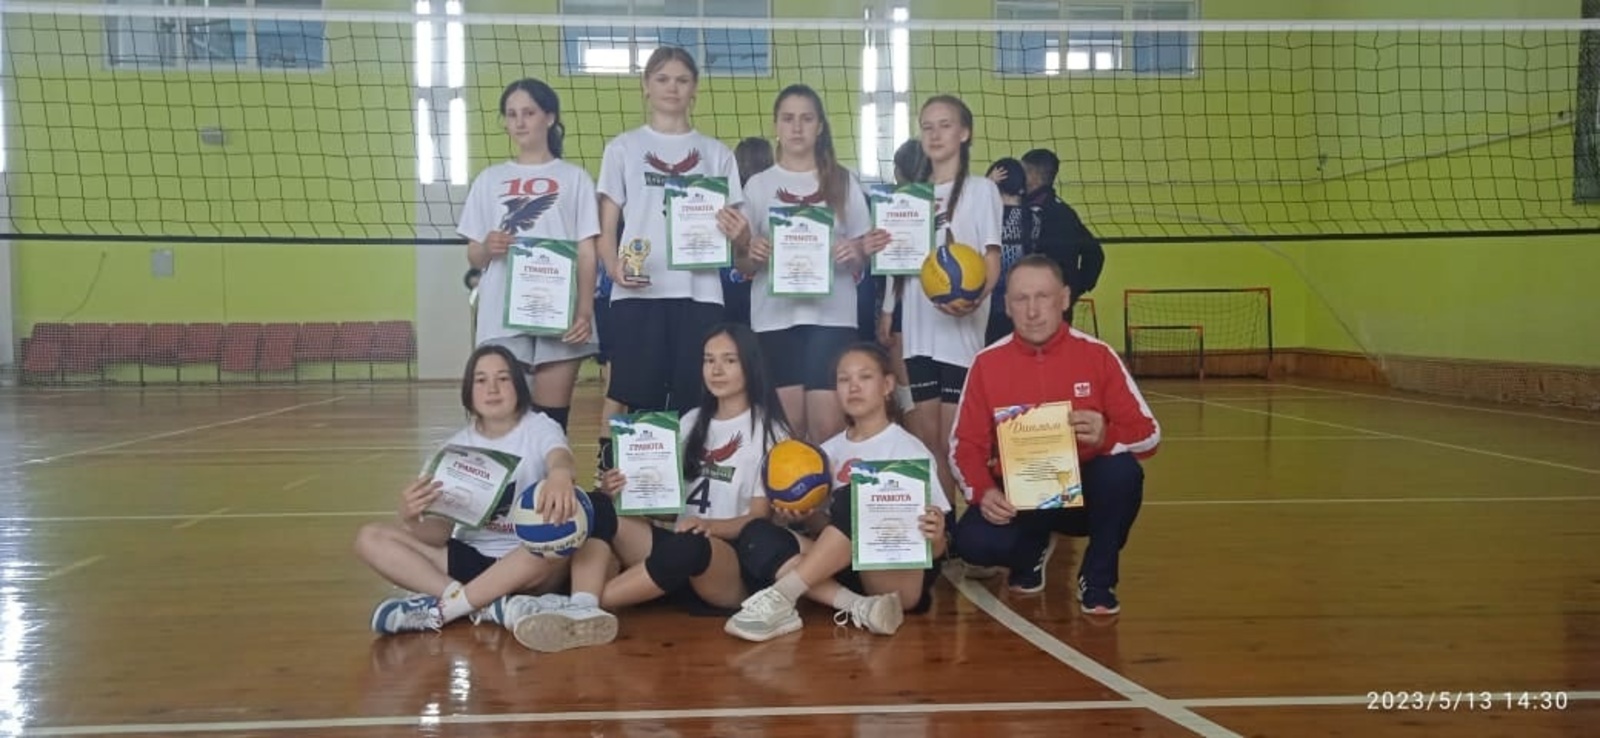 Команда девушек МОБУ СОШ с.Благовещенка (руководитель Шарифуллин Р.Т.) приняла участие в зональных соревнованиях по волейболу